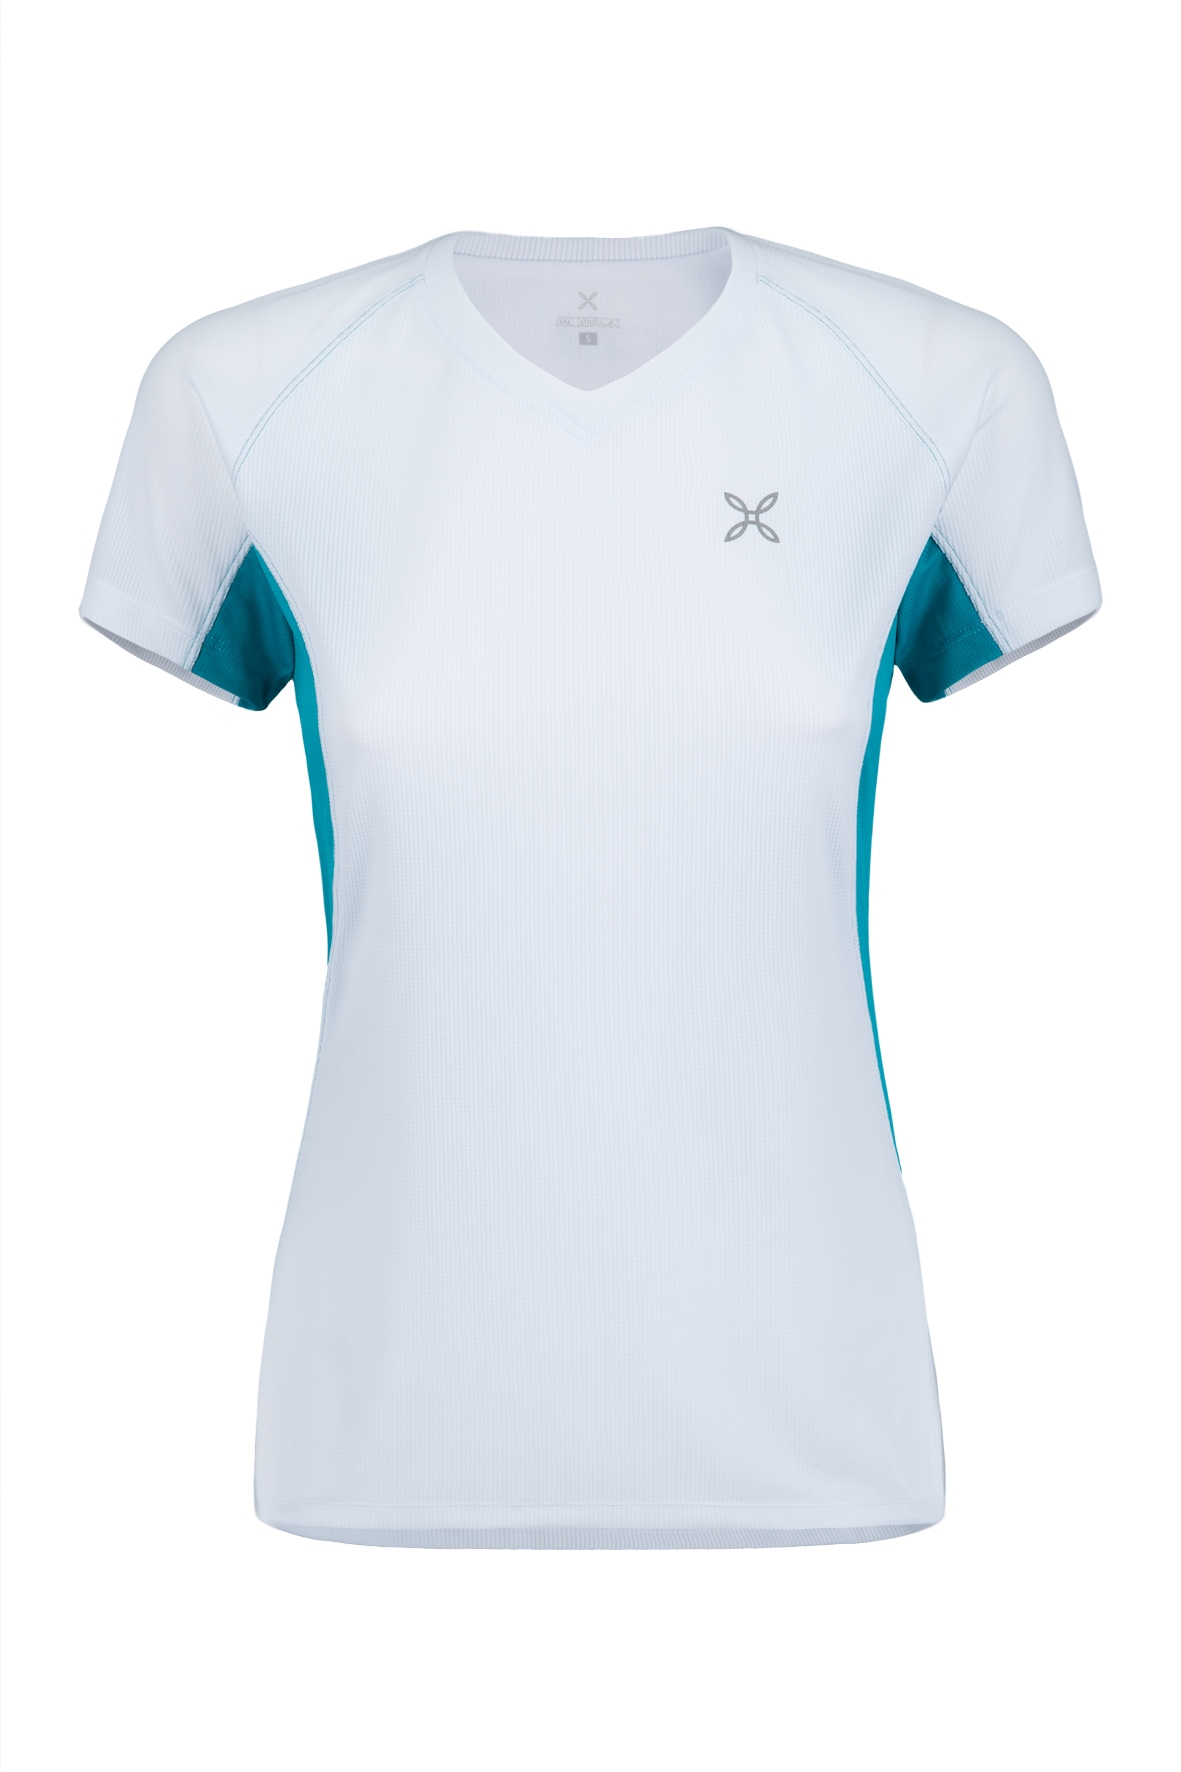 Predictor Unevenness extend MONTURA SKIN 2 T-SHIRT DONNA - Euro 36,00 - t-shirt/camicie - Passsport  online